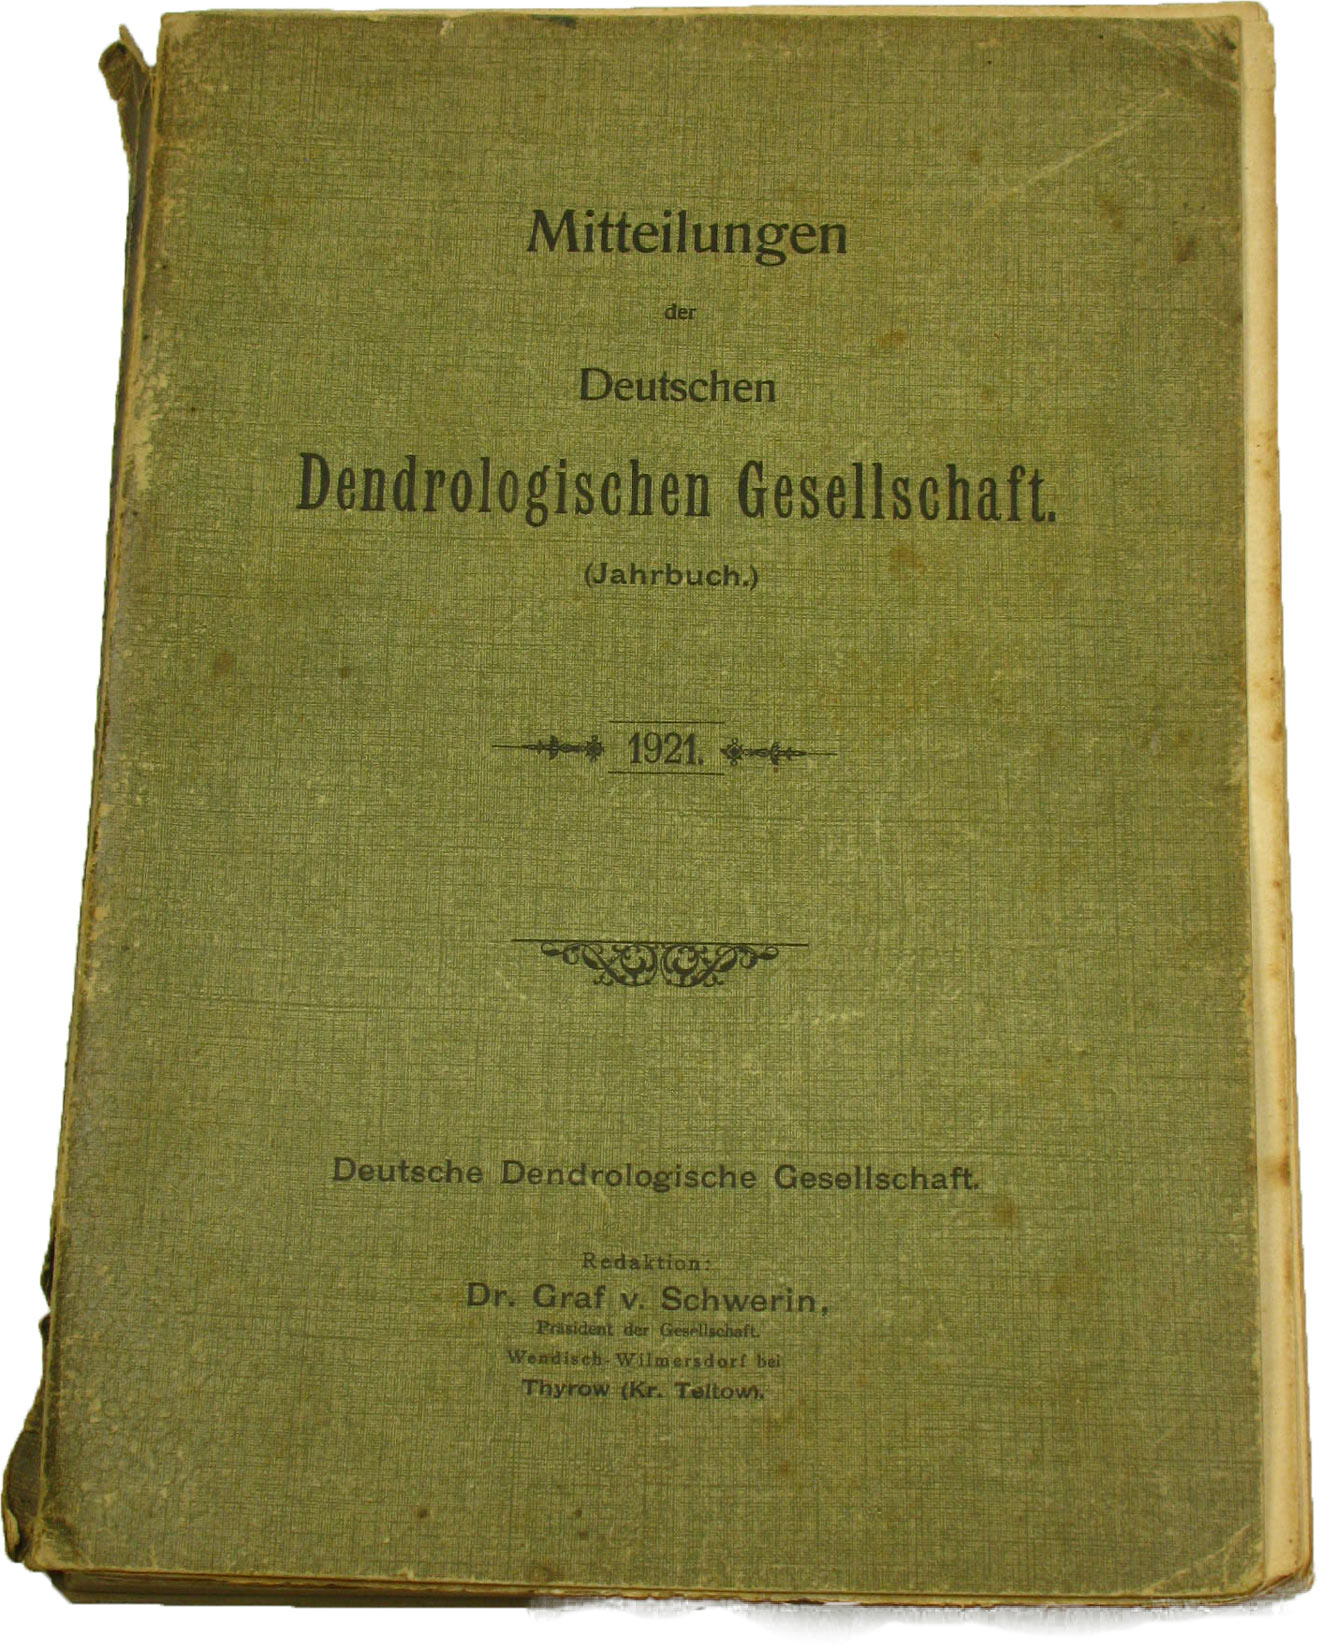 Dr. Graf v. Schwerin (Redaktion):  Mitteilungen der Deutschen Dendrologischen Gesellschaft (Jahrbuch 1921) 